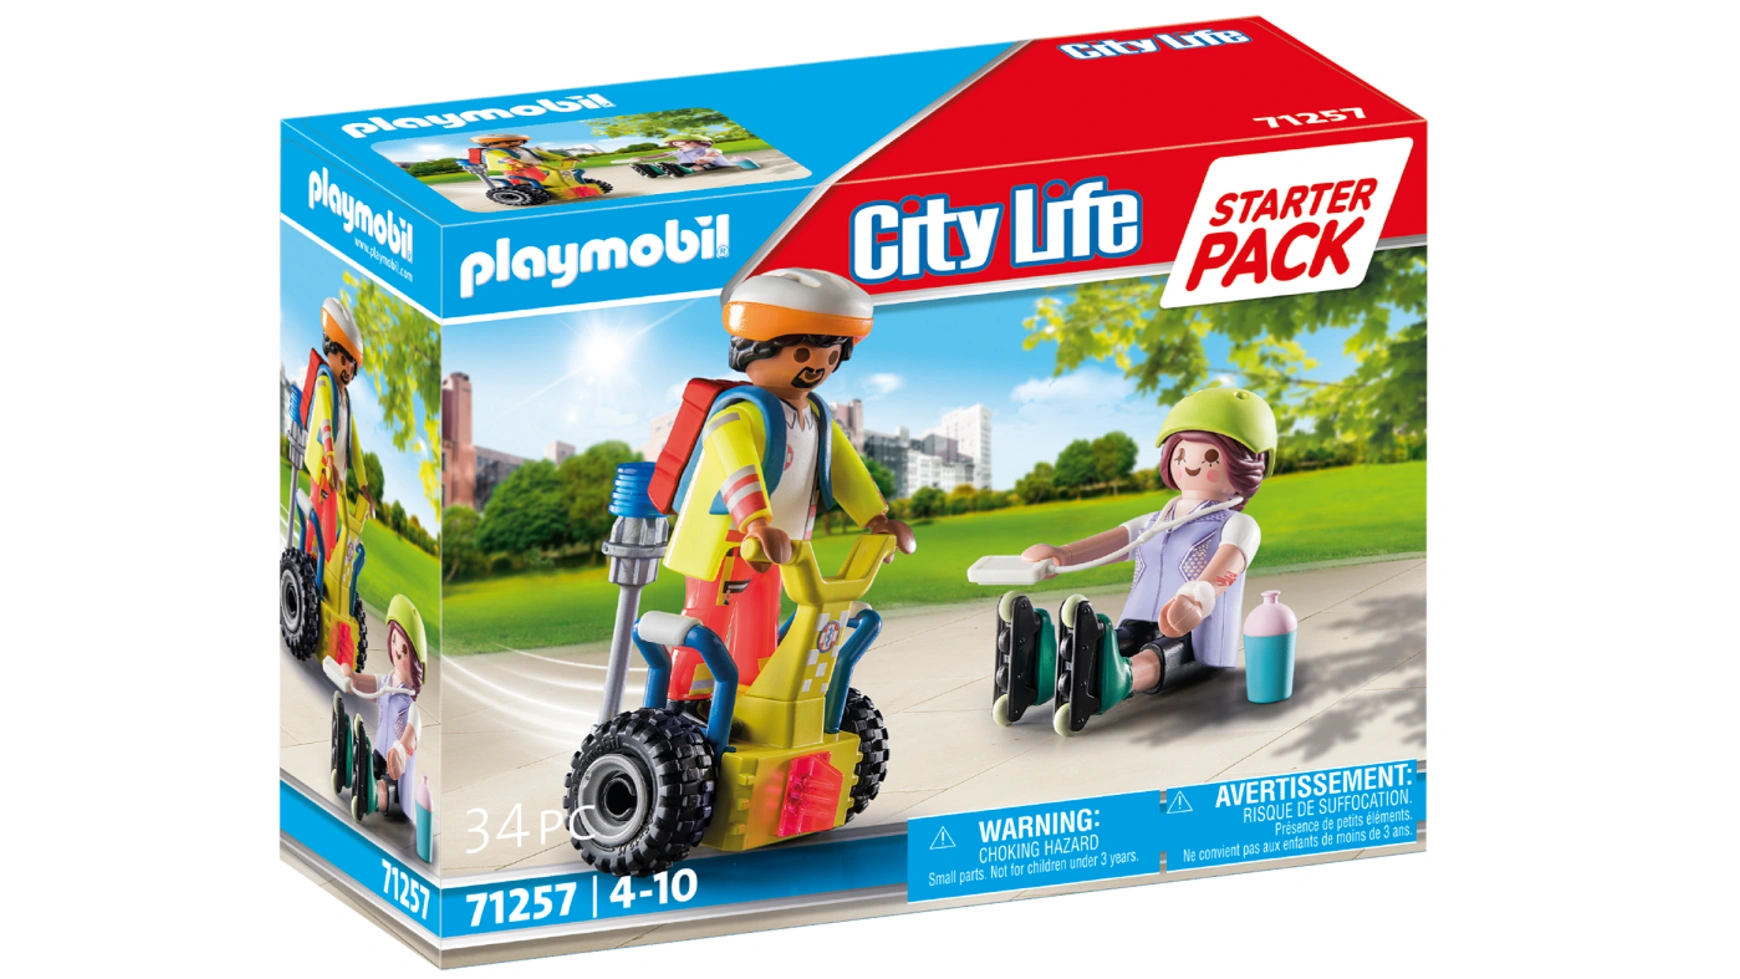 городская жизнь школьный автобус playmobil Городская жизнь стартовый пакет спасения с balance racer Playmobil